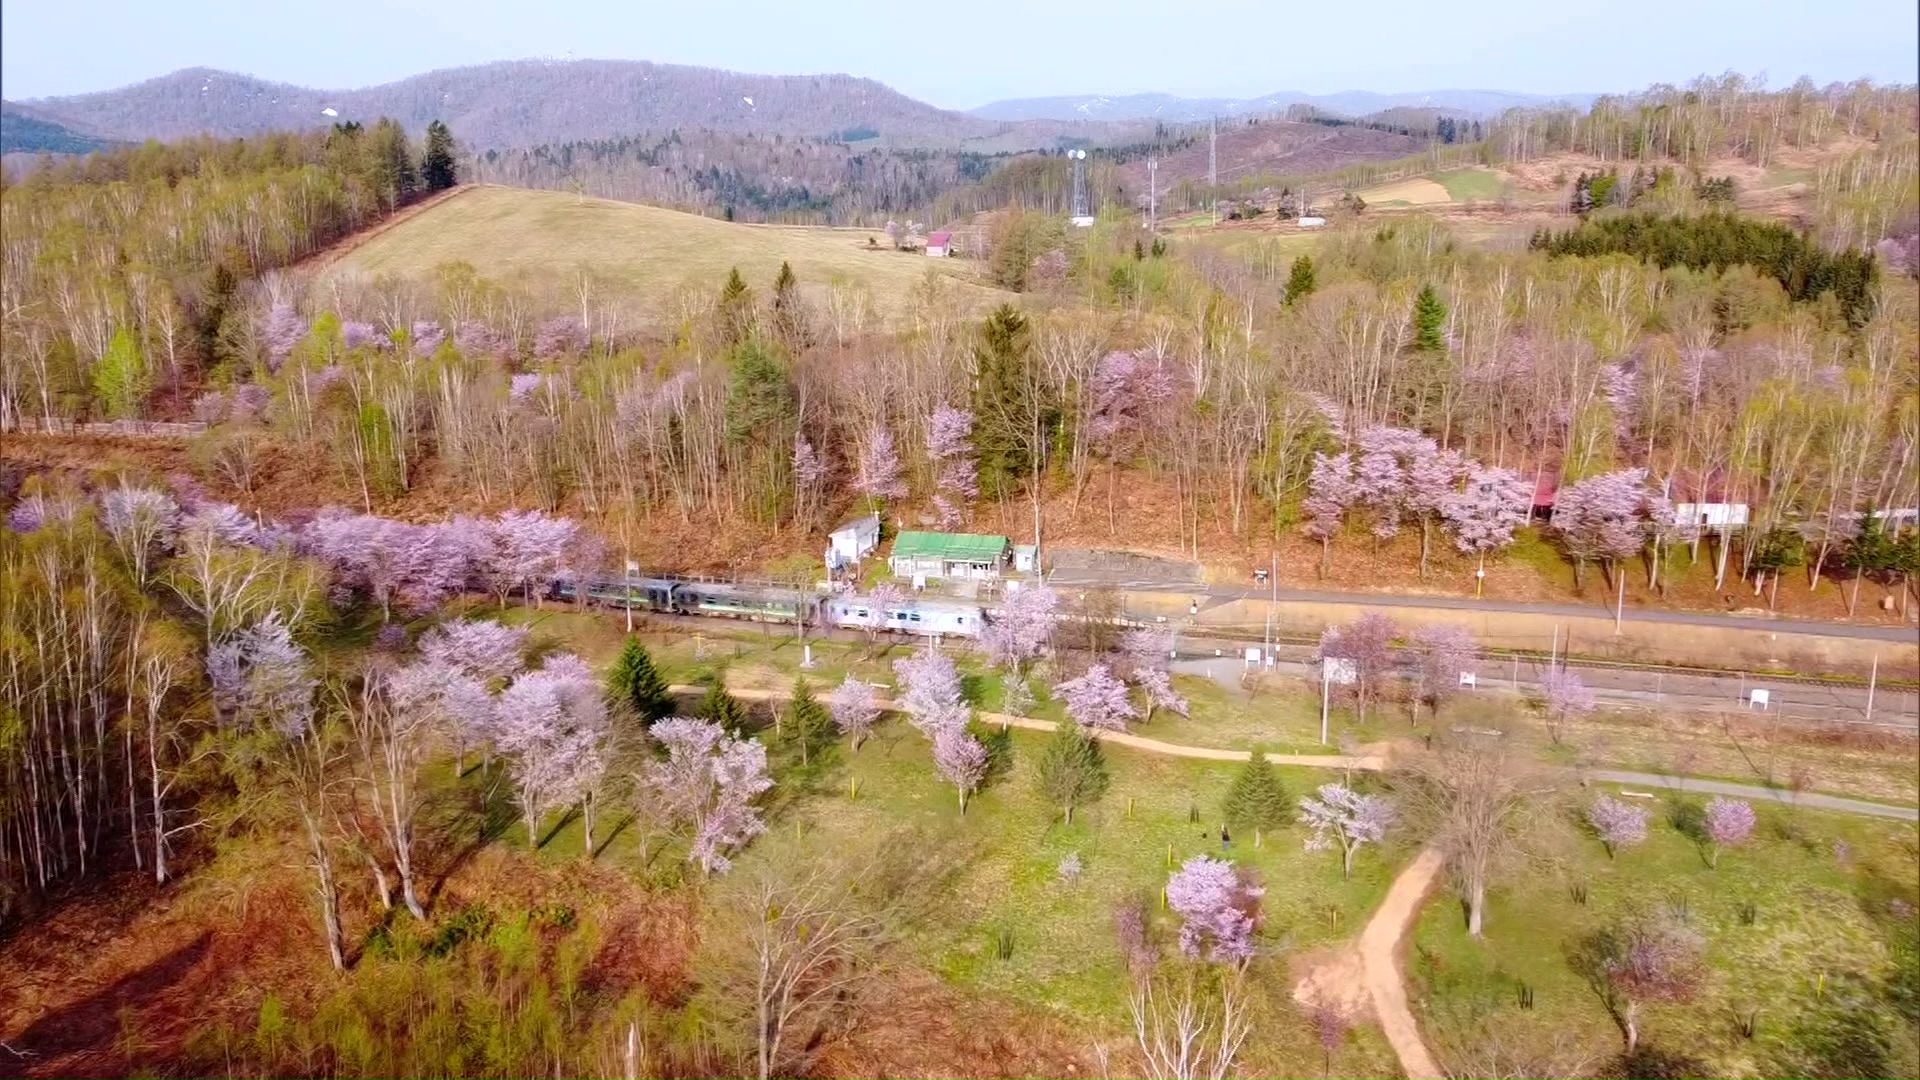 【北海道さくらスケッチ】「北海道のサクラは初めて」「癒された」塩狩峠の一面をピンクに染め上げるエゾヤマザクラ 標高が高く見ごろは少し遅め…列車と桜の共演も